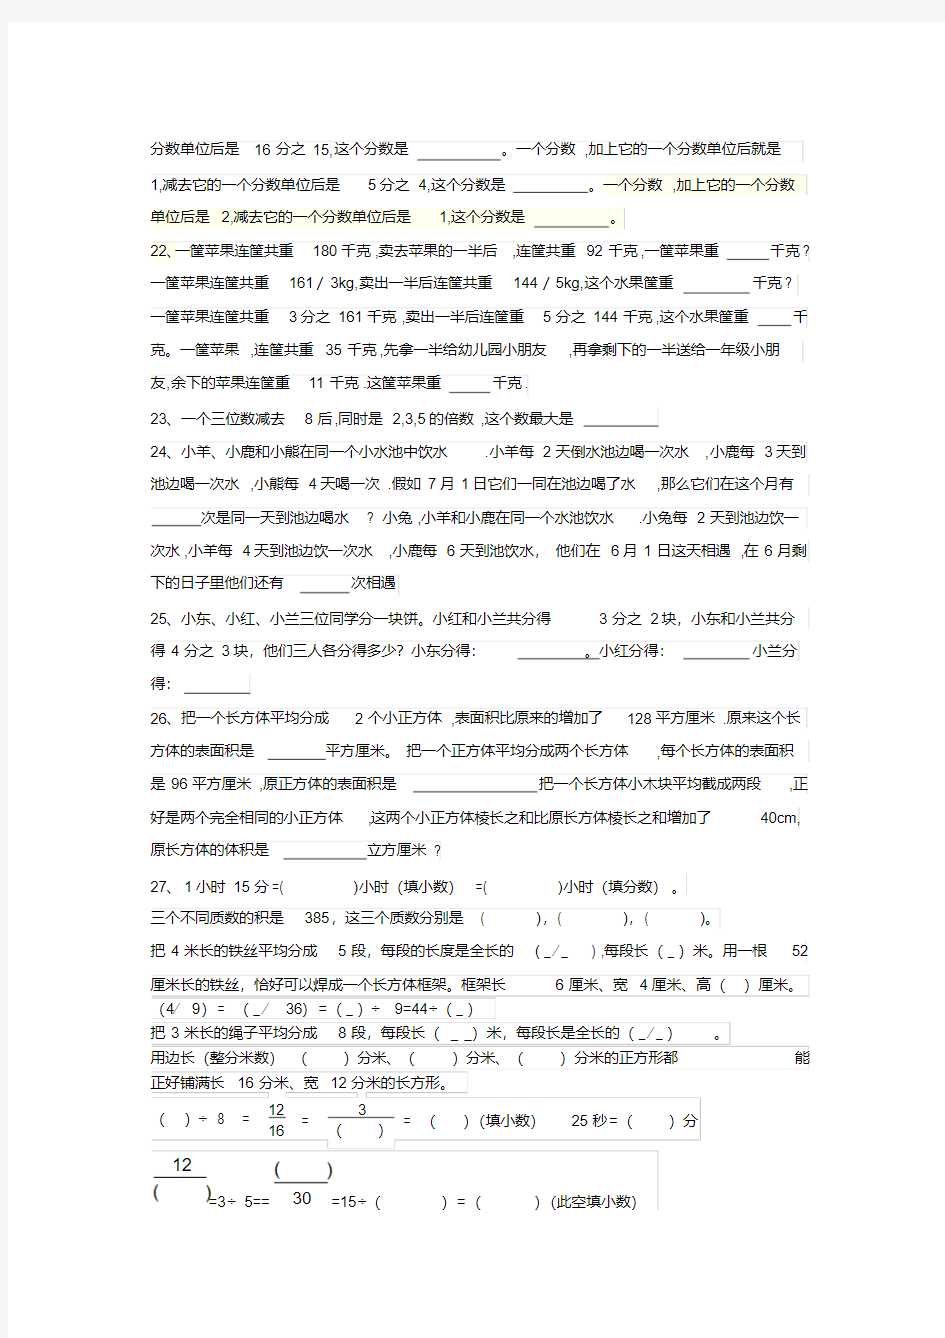 新版人教版五年级下册数学全册易错题集锦-新版.pdf